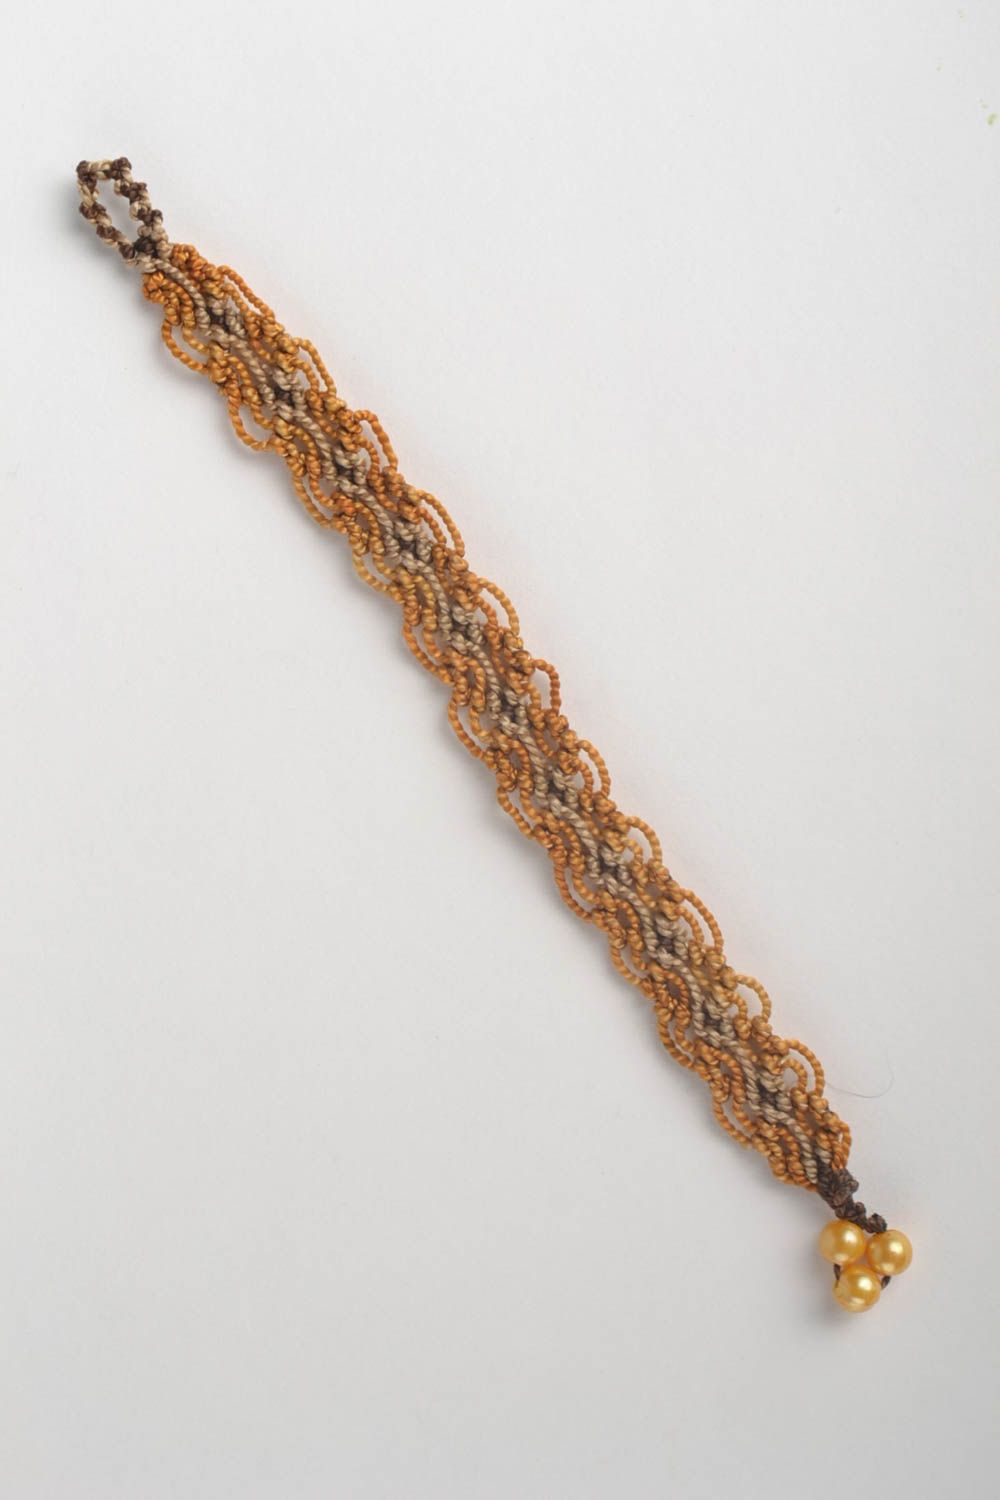 Модный браслет ручной работы тонкий браслет из ниток плетеный браслет макраме фото 2